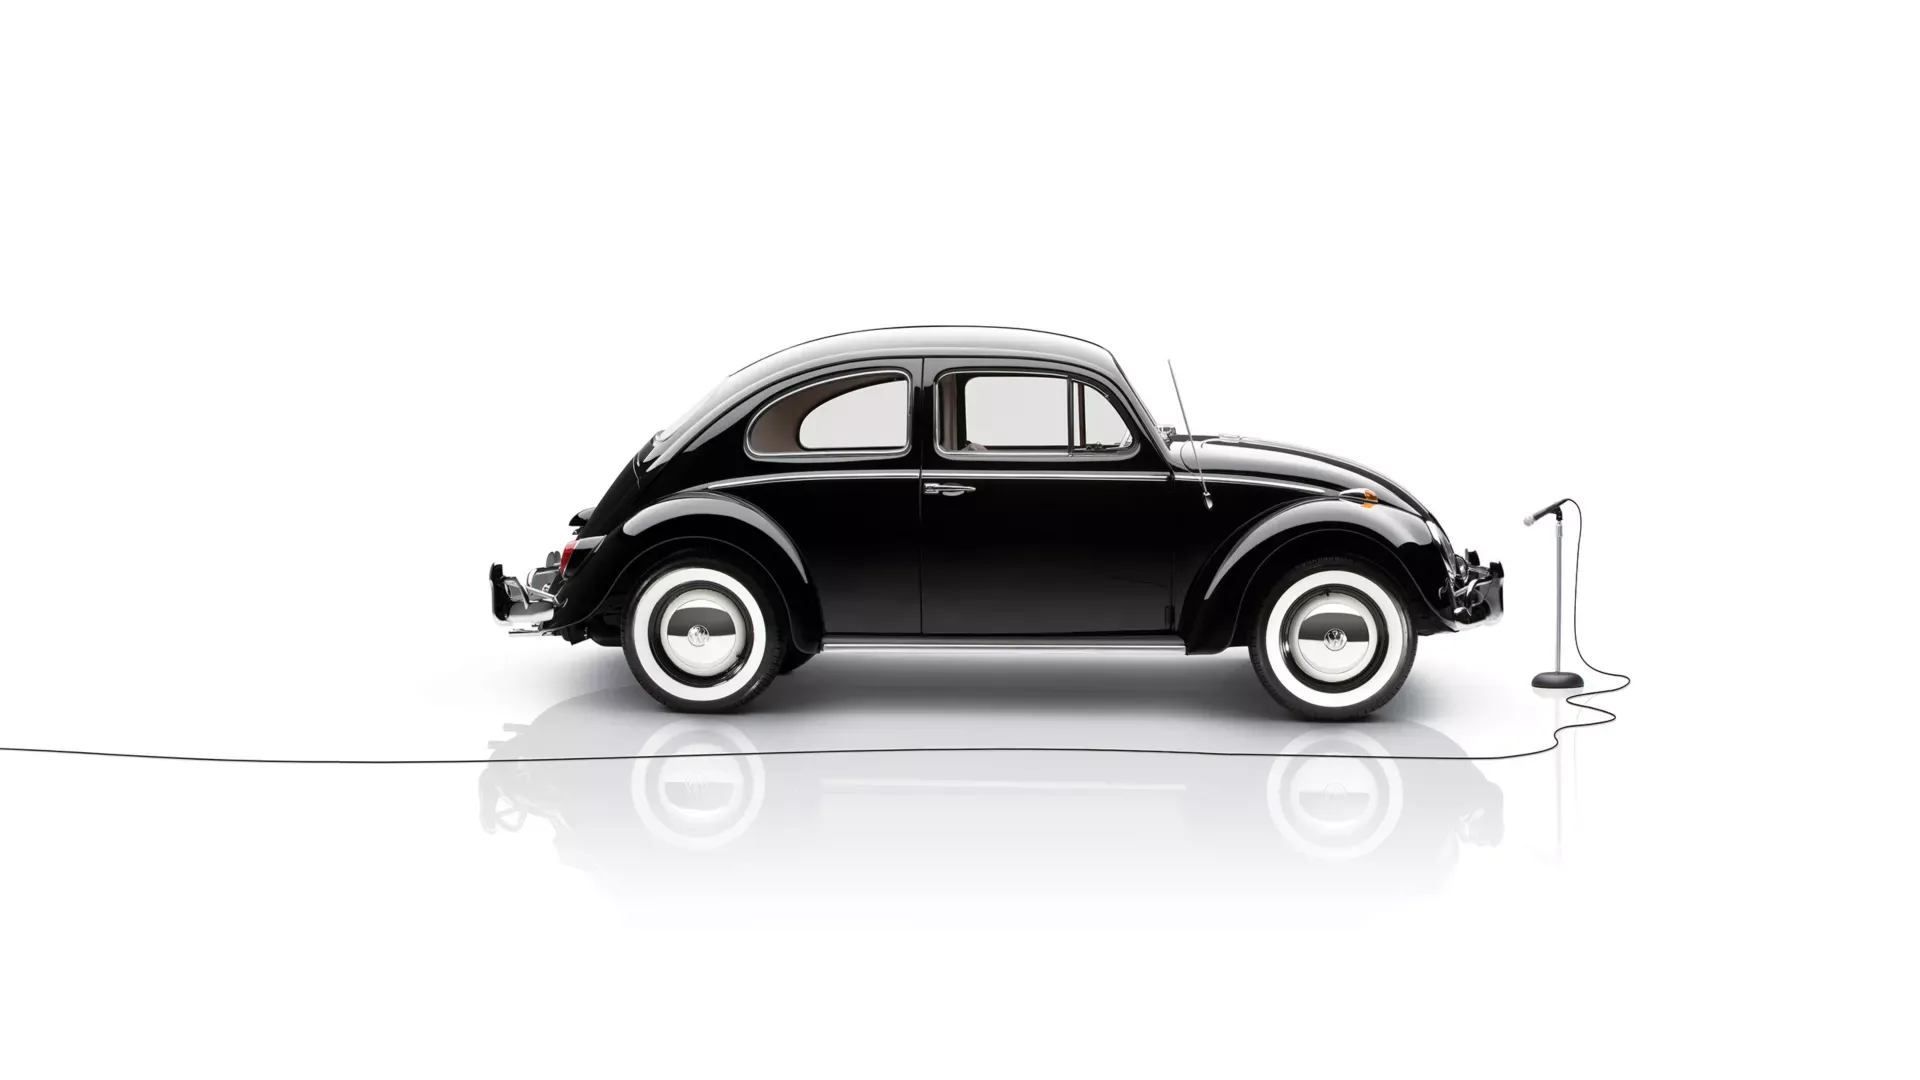 Black VW Beetle on display